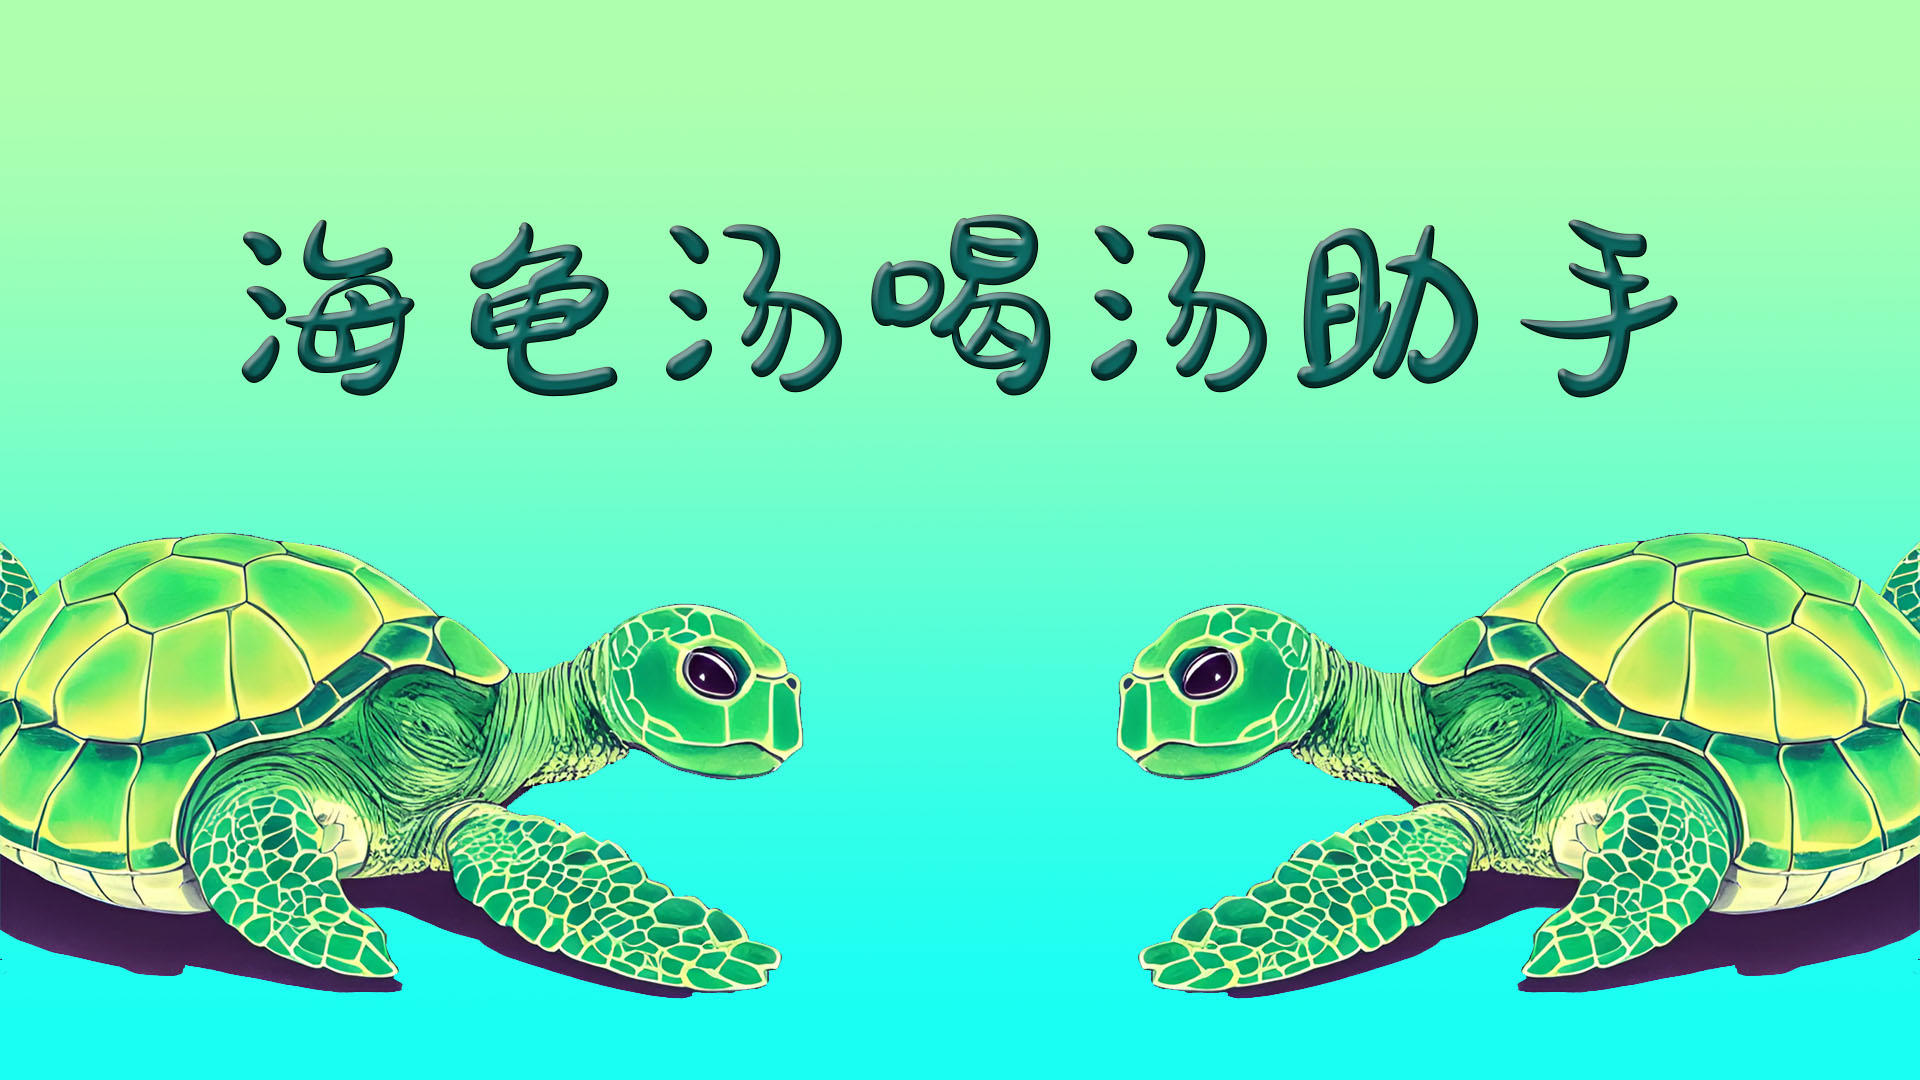 Banner of Asisten sup penyu 